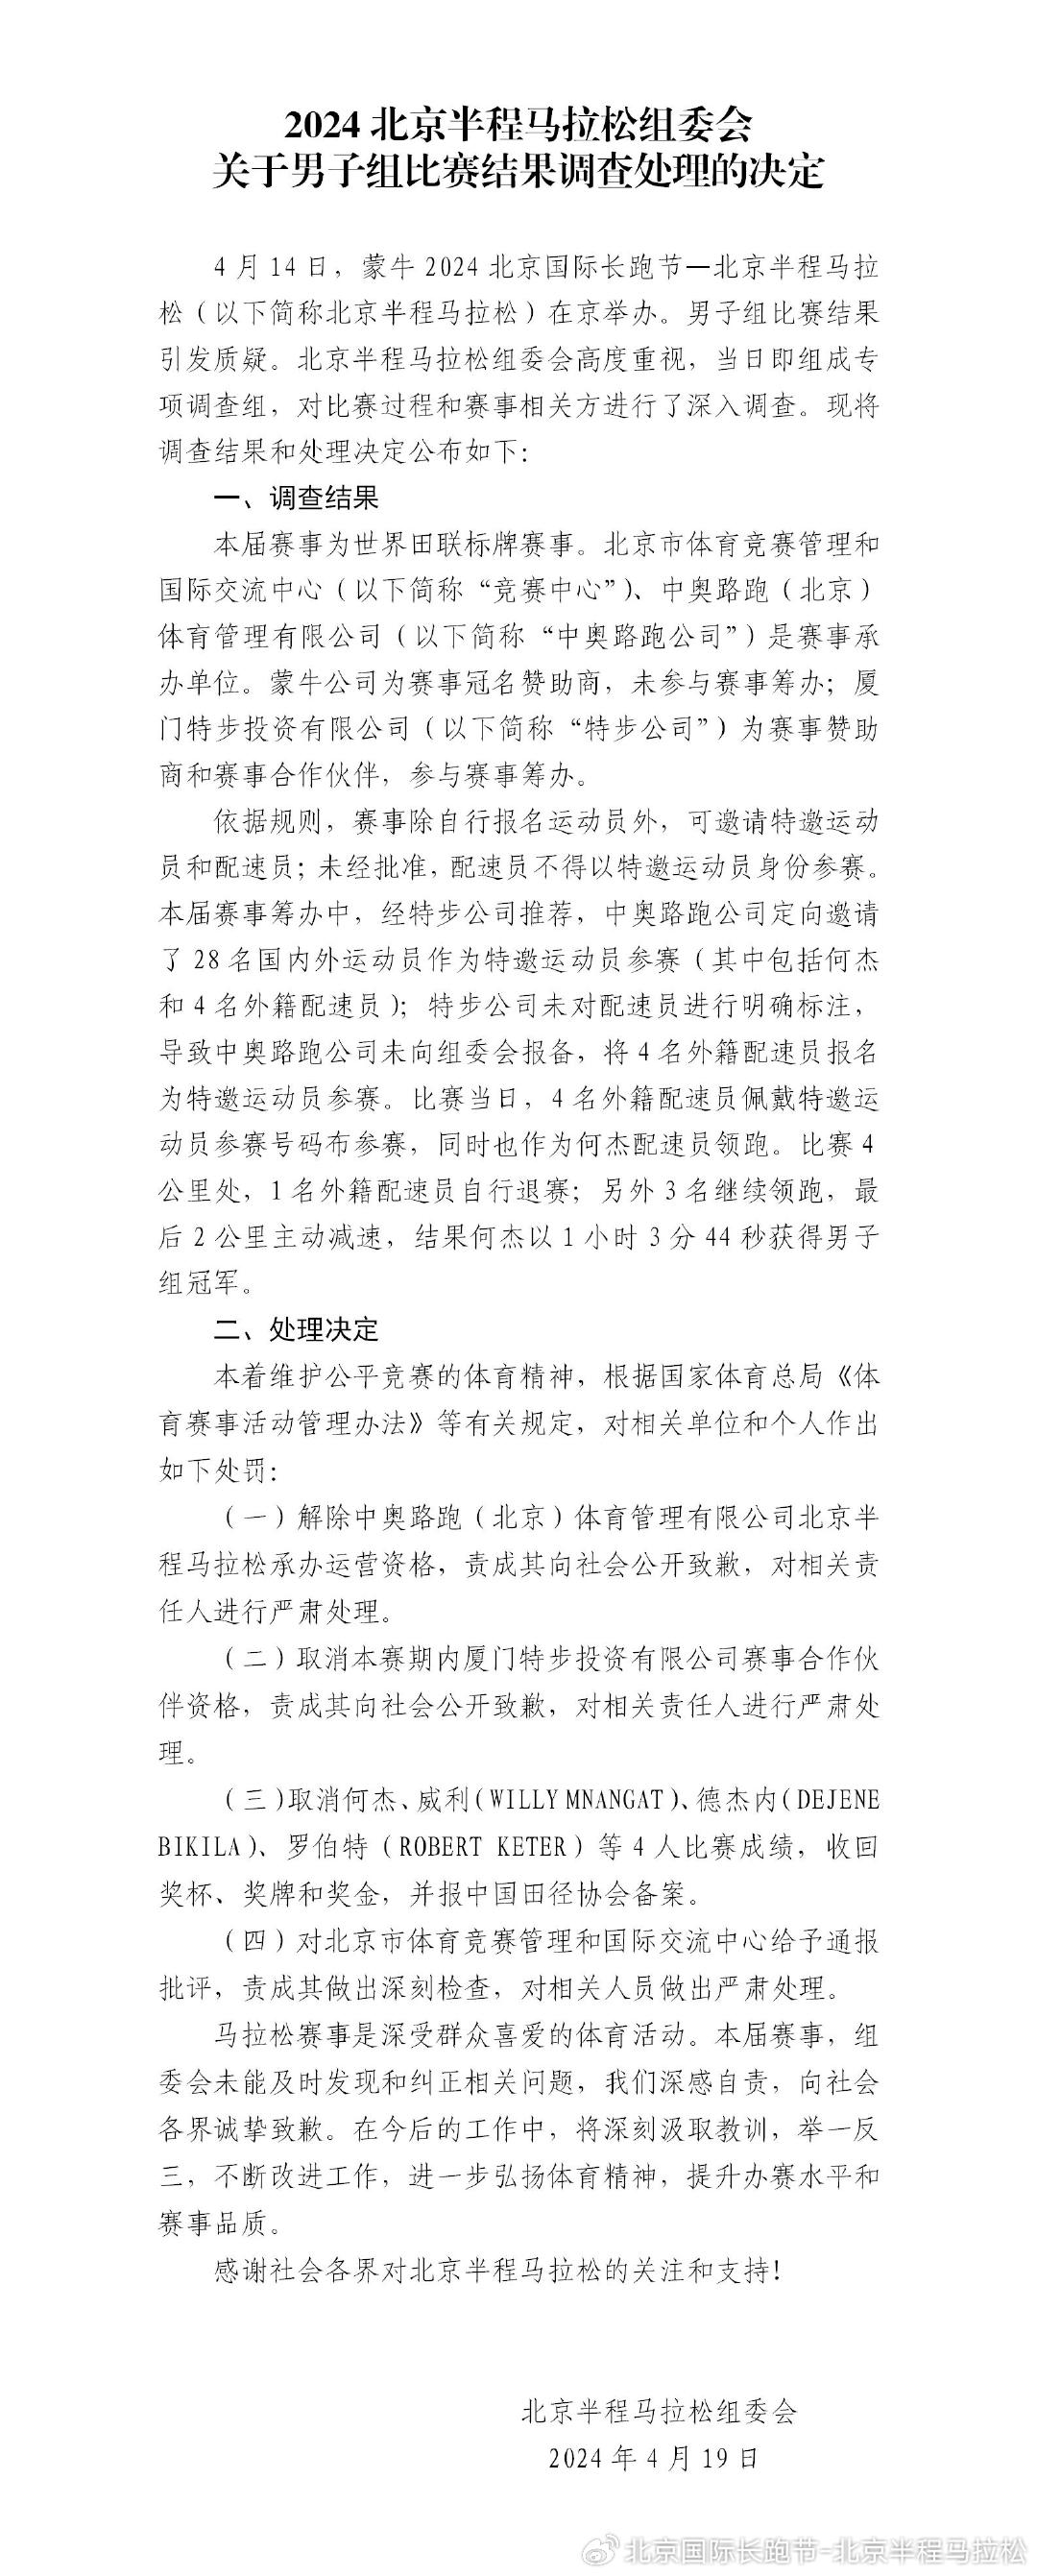 来源：@北京国际长跑节-北京半程马拉松、厦门特步投资有限公司